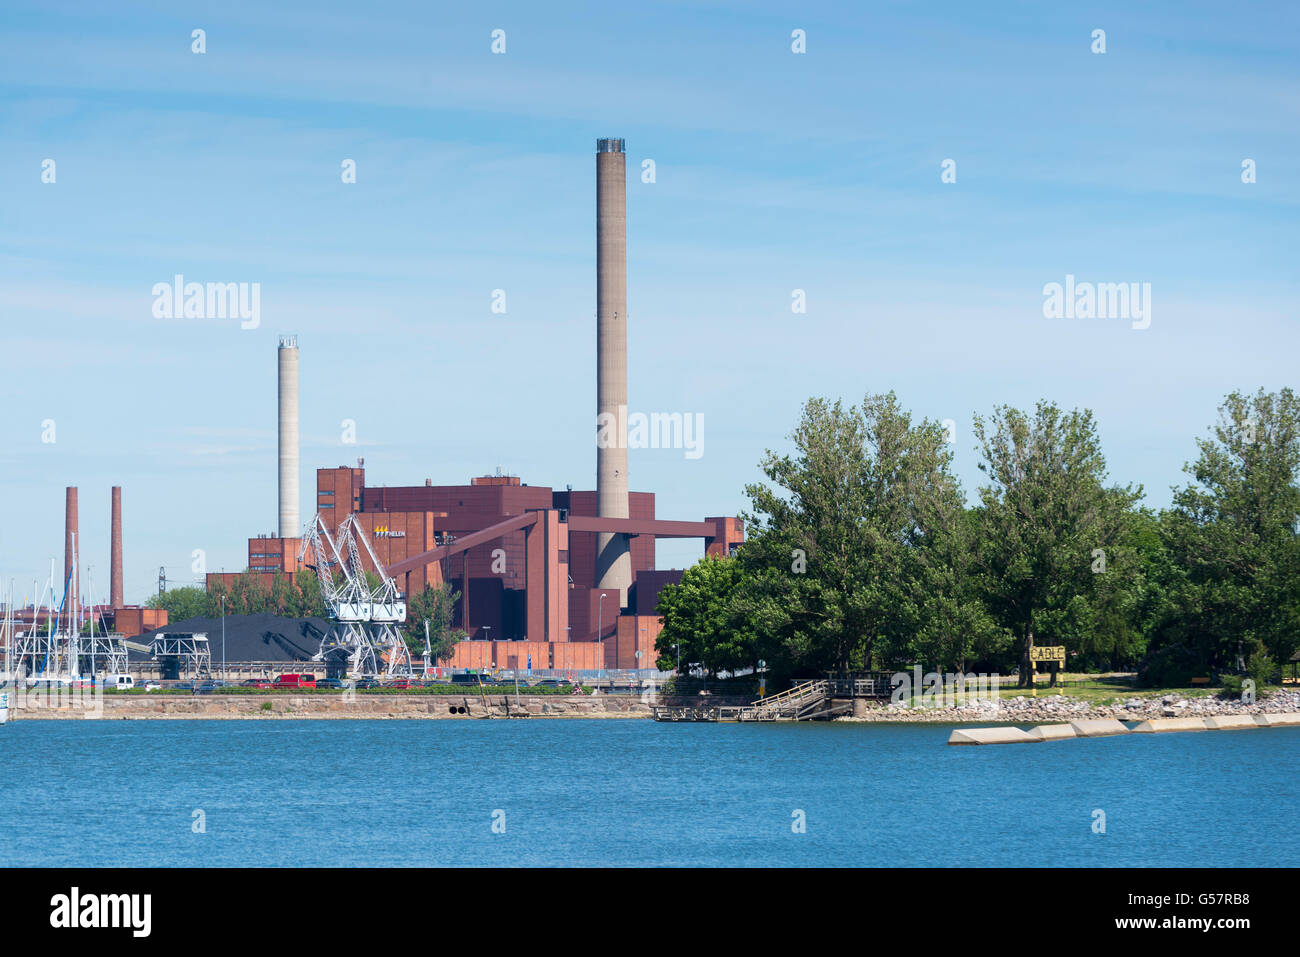 HELSINKI, FINLAND - JUNE 14, 2016: Hanasaari Power Plant is a coal-fired cogeneration power plant in Helsinki, Finland. Its chim Stock Photo